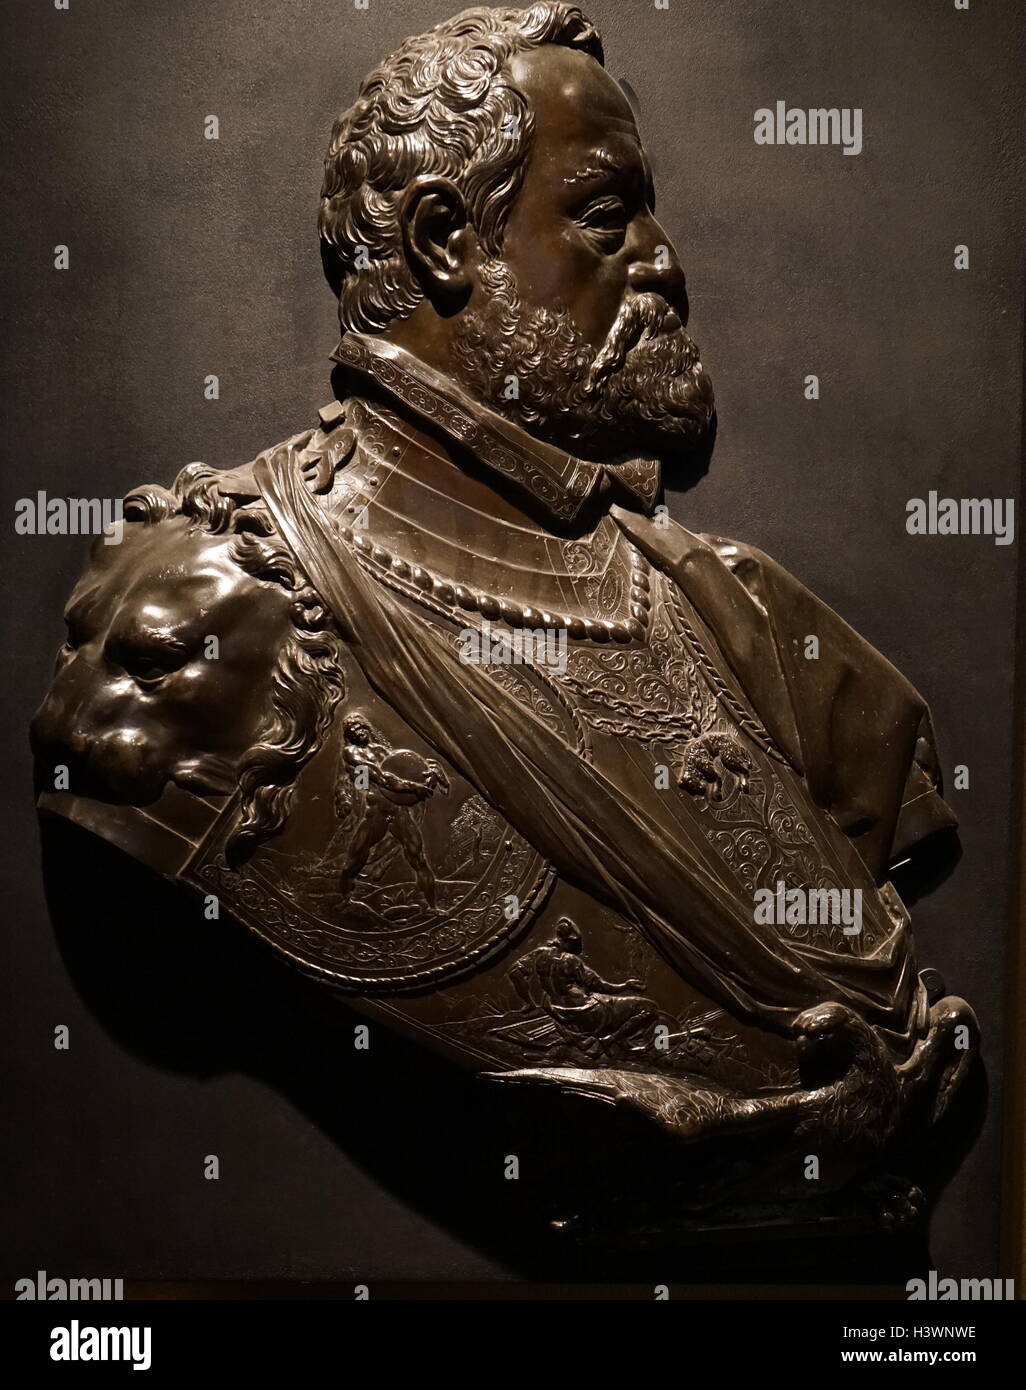 Buste en bronze de Rodolphe II, empereur romain germanique (1552-1612), roi de Hongrie, de la Croatie et de la Bohême, et l'Archiduc d'Autriche. Sculptée par Adriaen de Vries (1556-1626), un sculpteur maniériste du Nord. En date du 17e siècle Banque D'Images